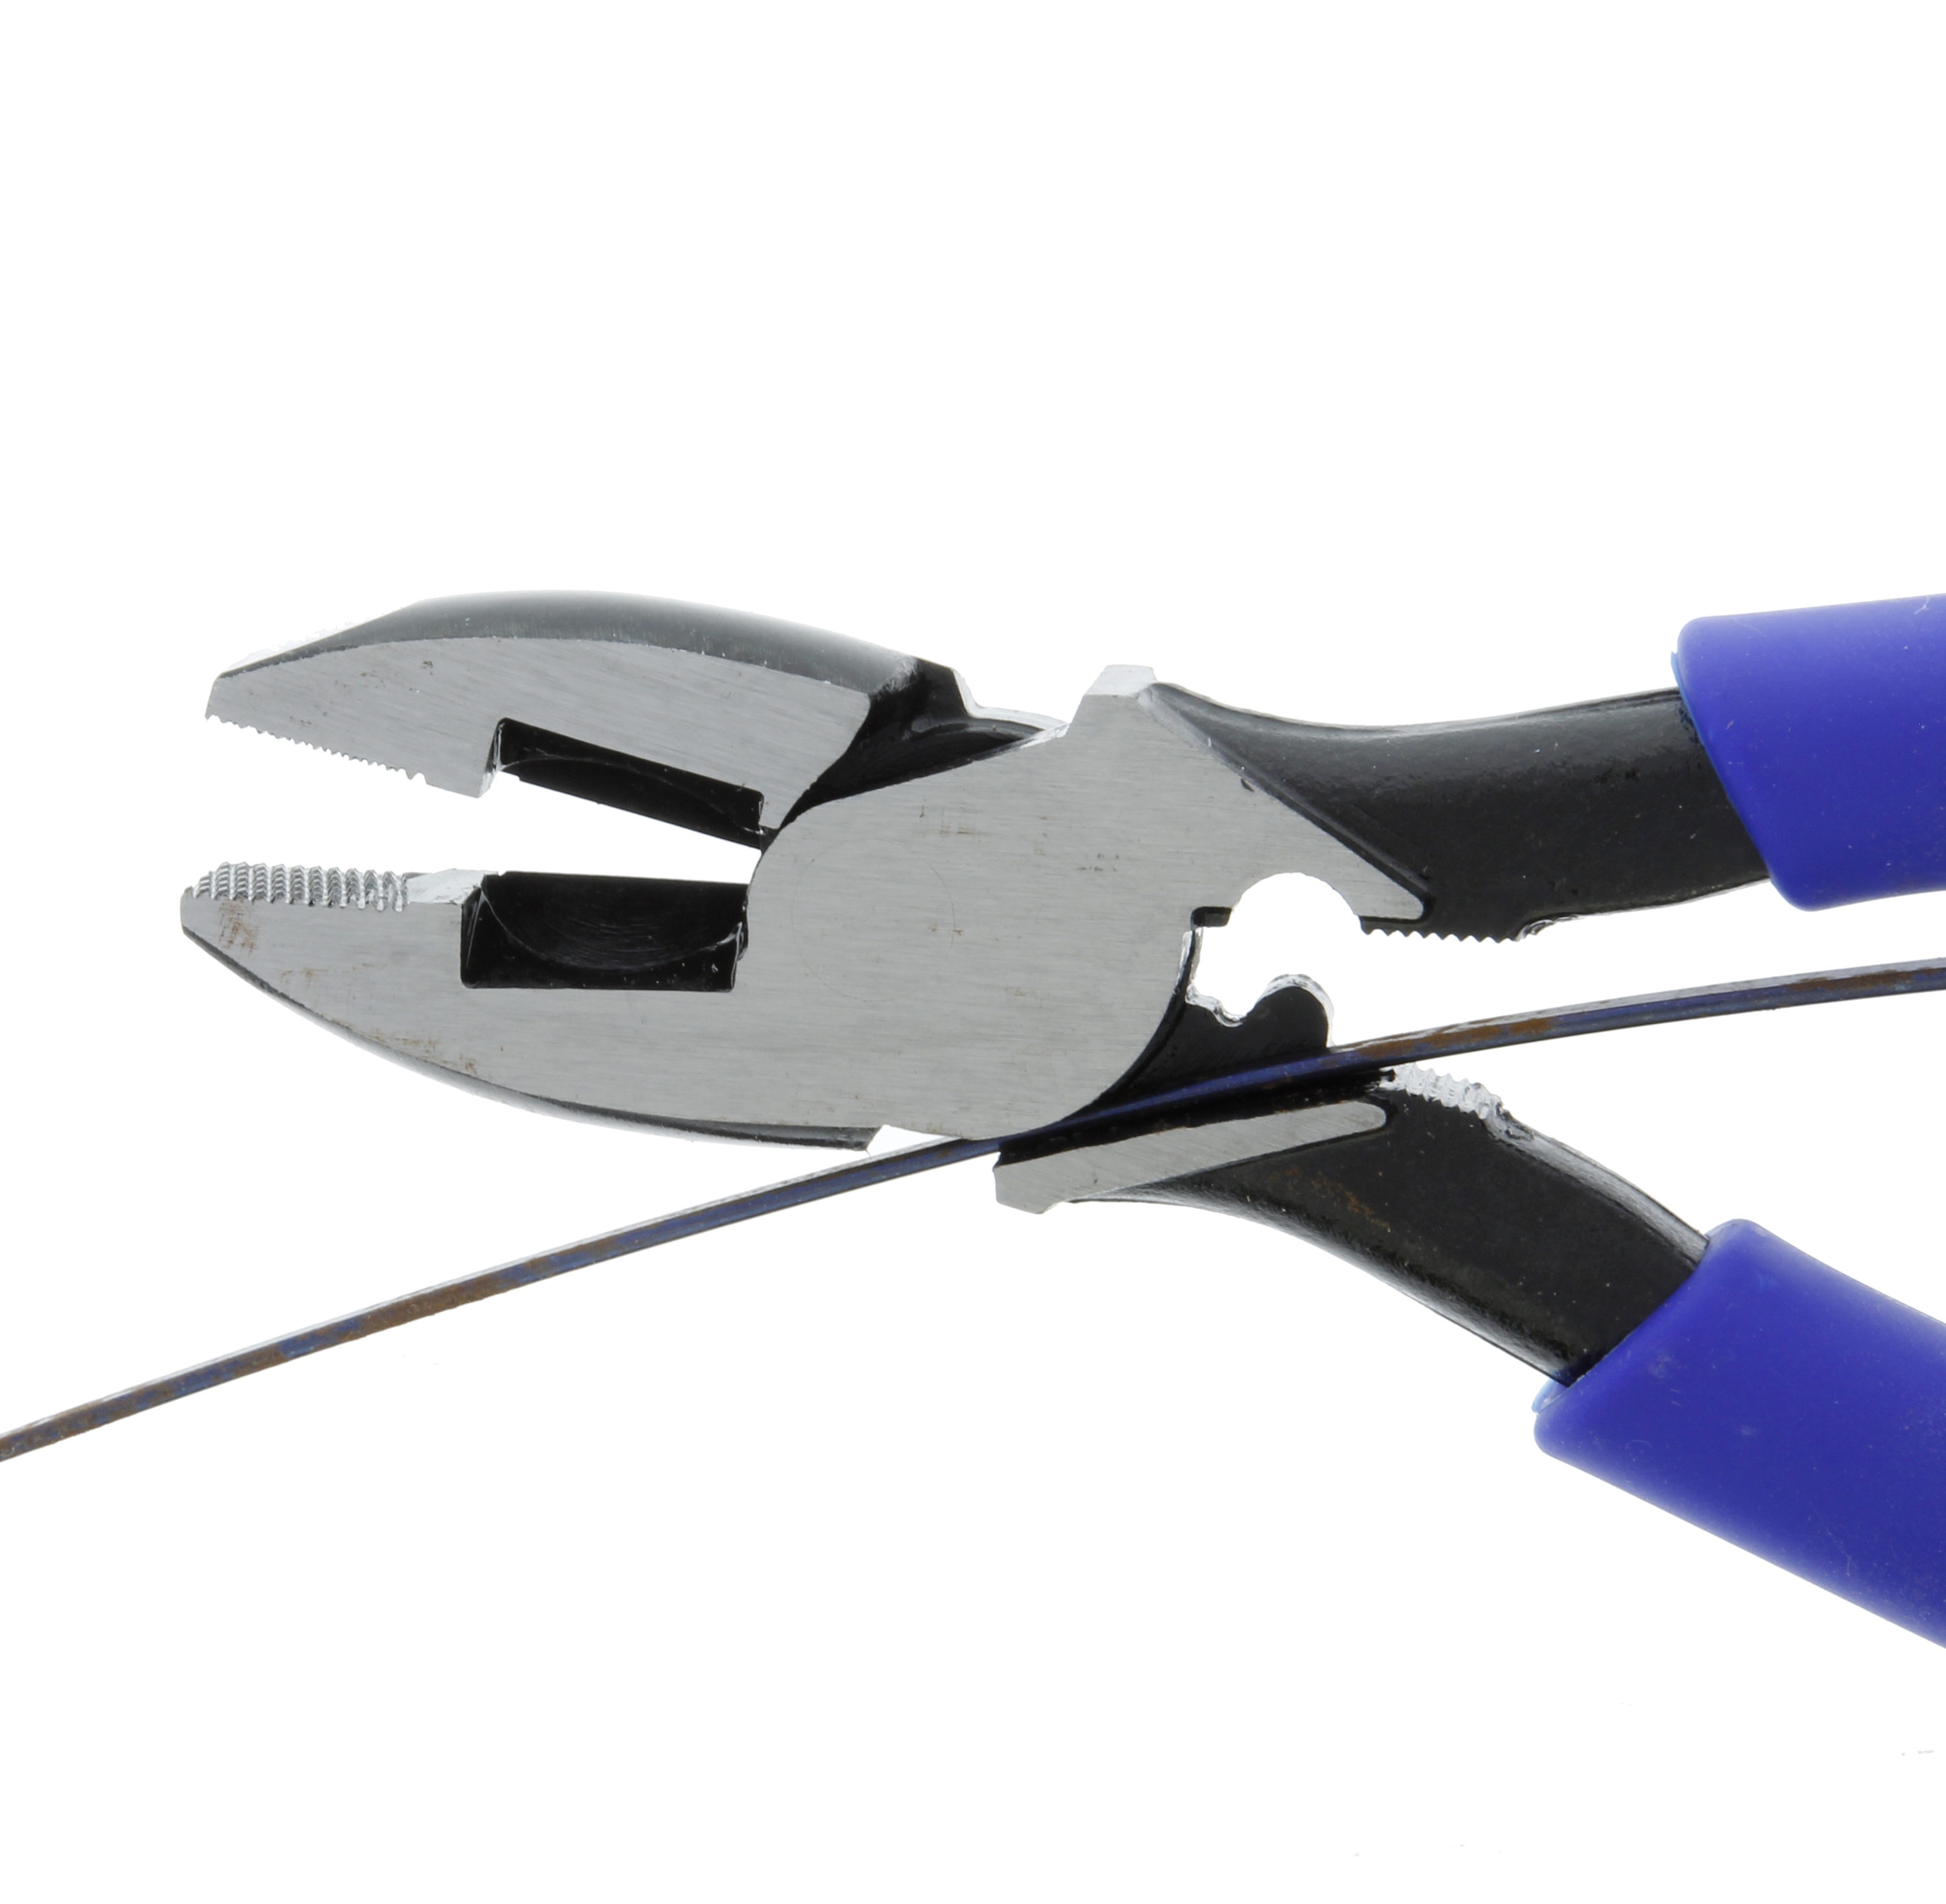 SP-7 Side Cutter Pliers